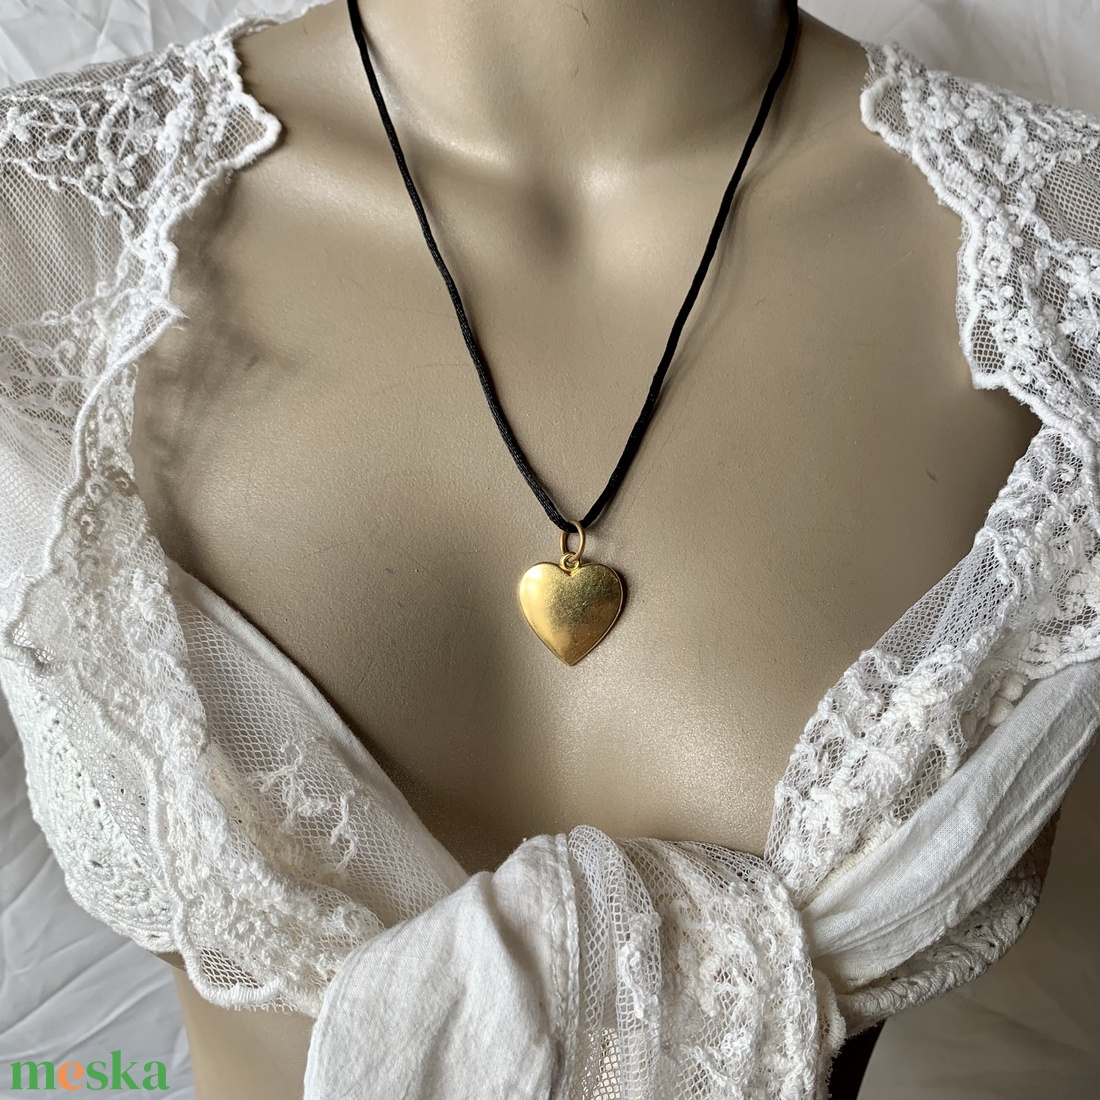 Szív medálos nyaklánc, szív alakú medállal, sárgaréz szívvel,fekete selyemzsinóron - ékszer - nyaklánc - medálos nyaklánc - Meska.hu